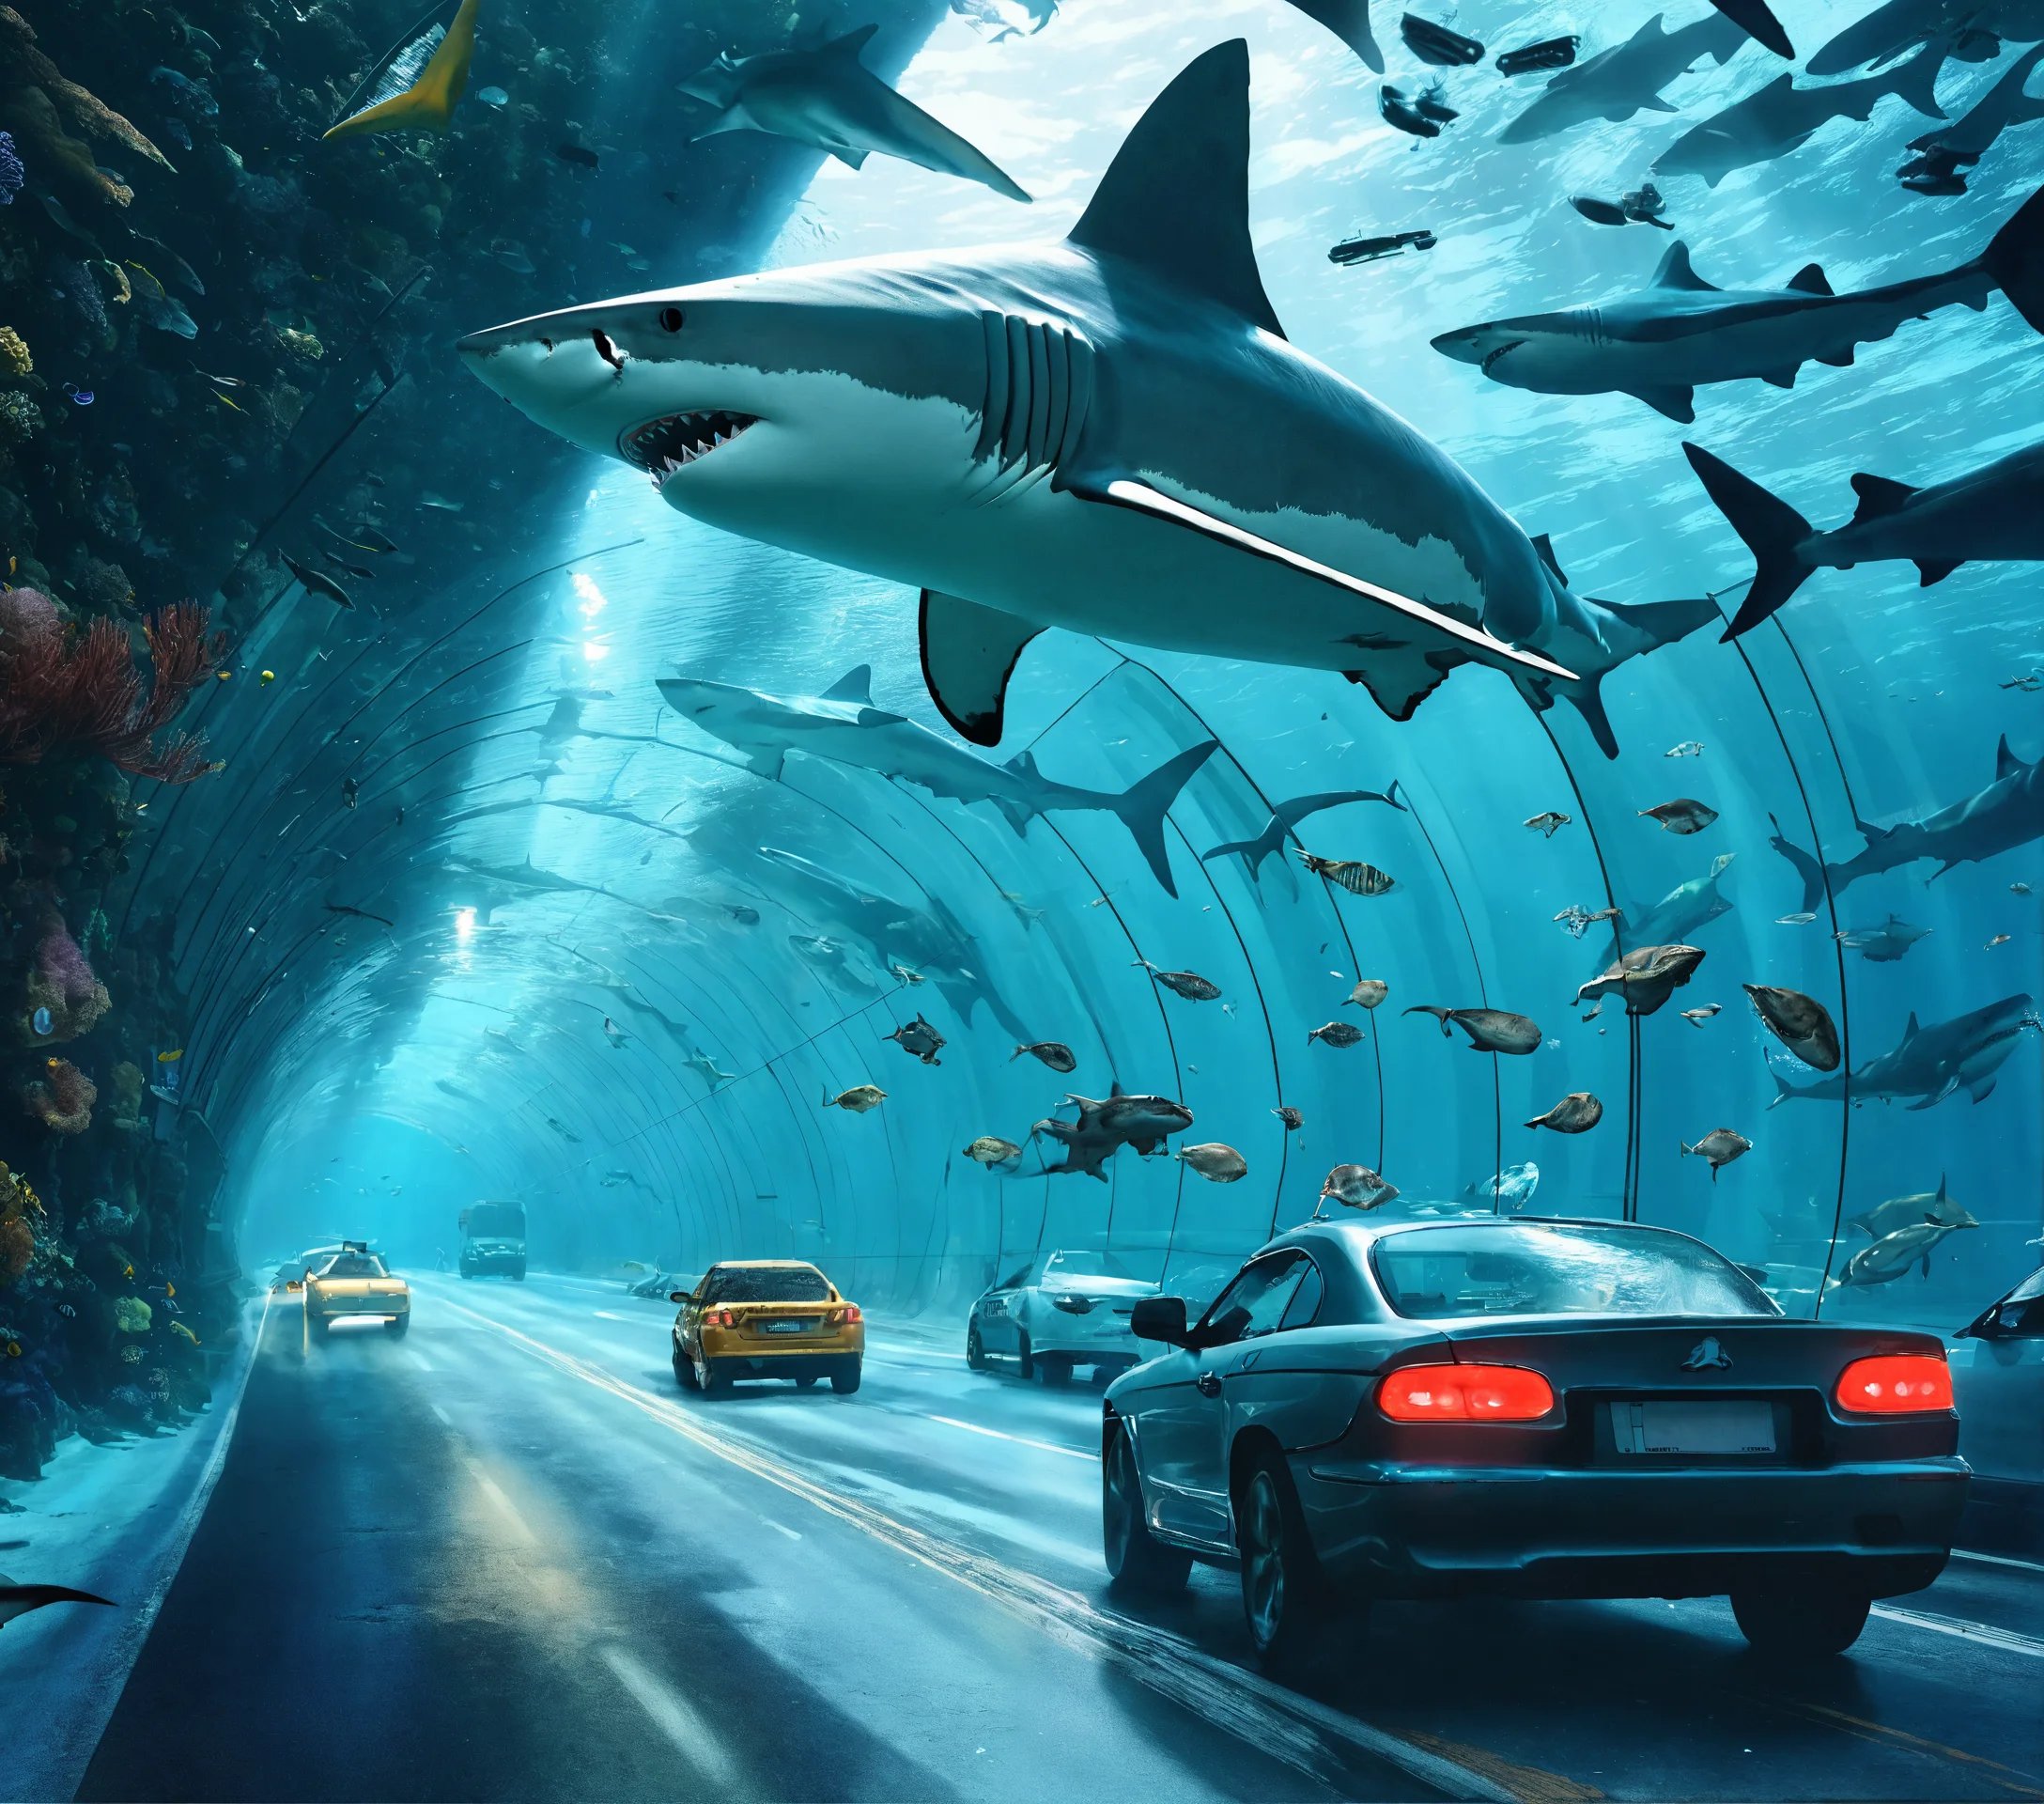 תמונה של מנהרה שקופה מתחת ים עם כריש ובמנהרה עוברי.jpg